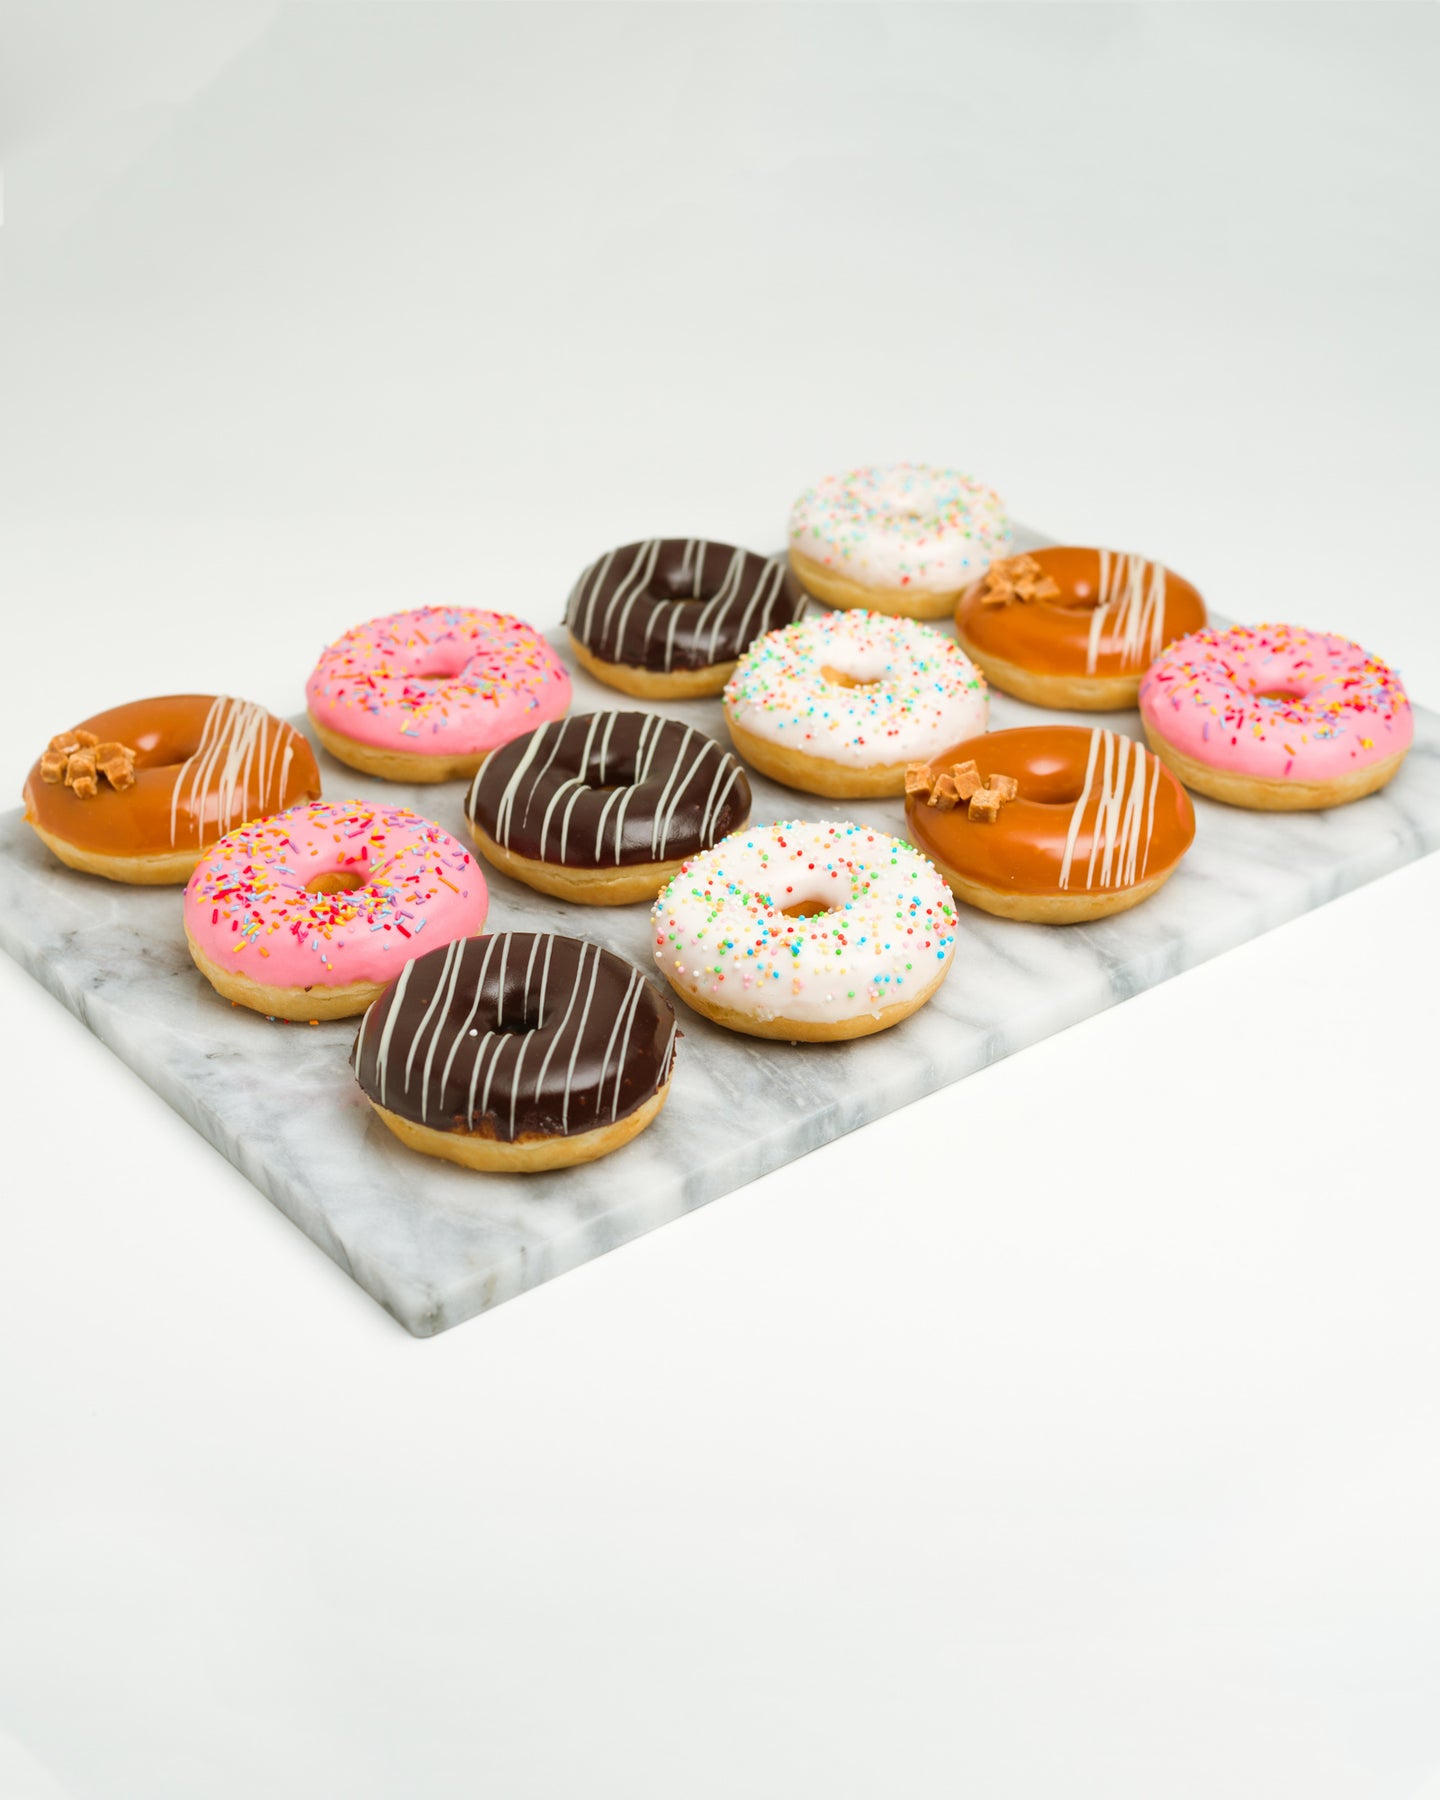 Ring Donuts - Mixed Box of 9